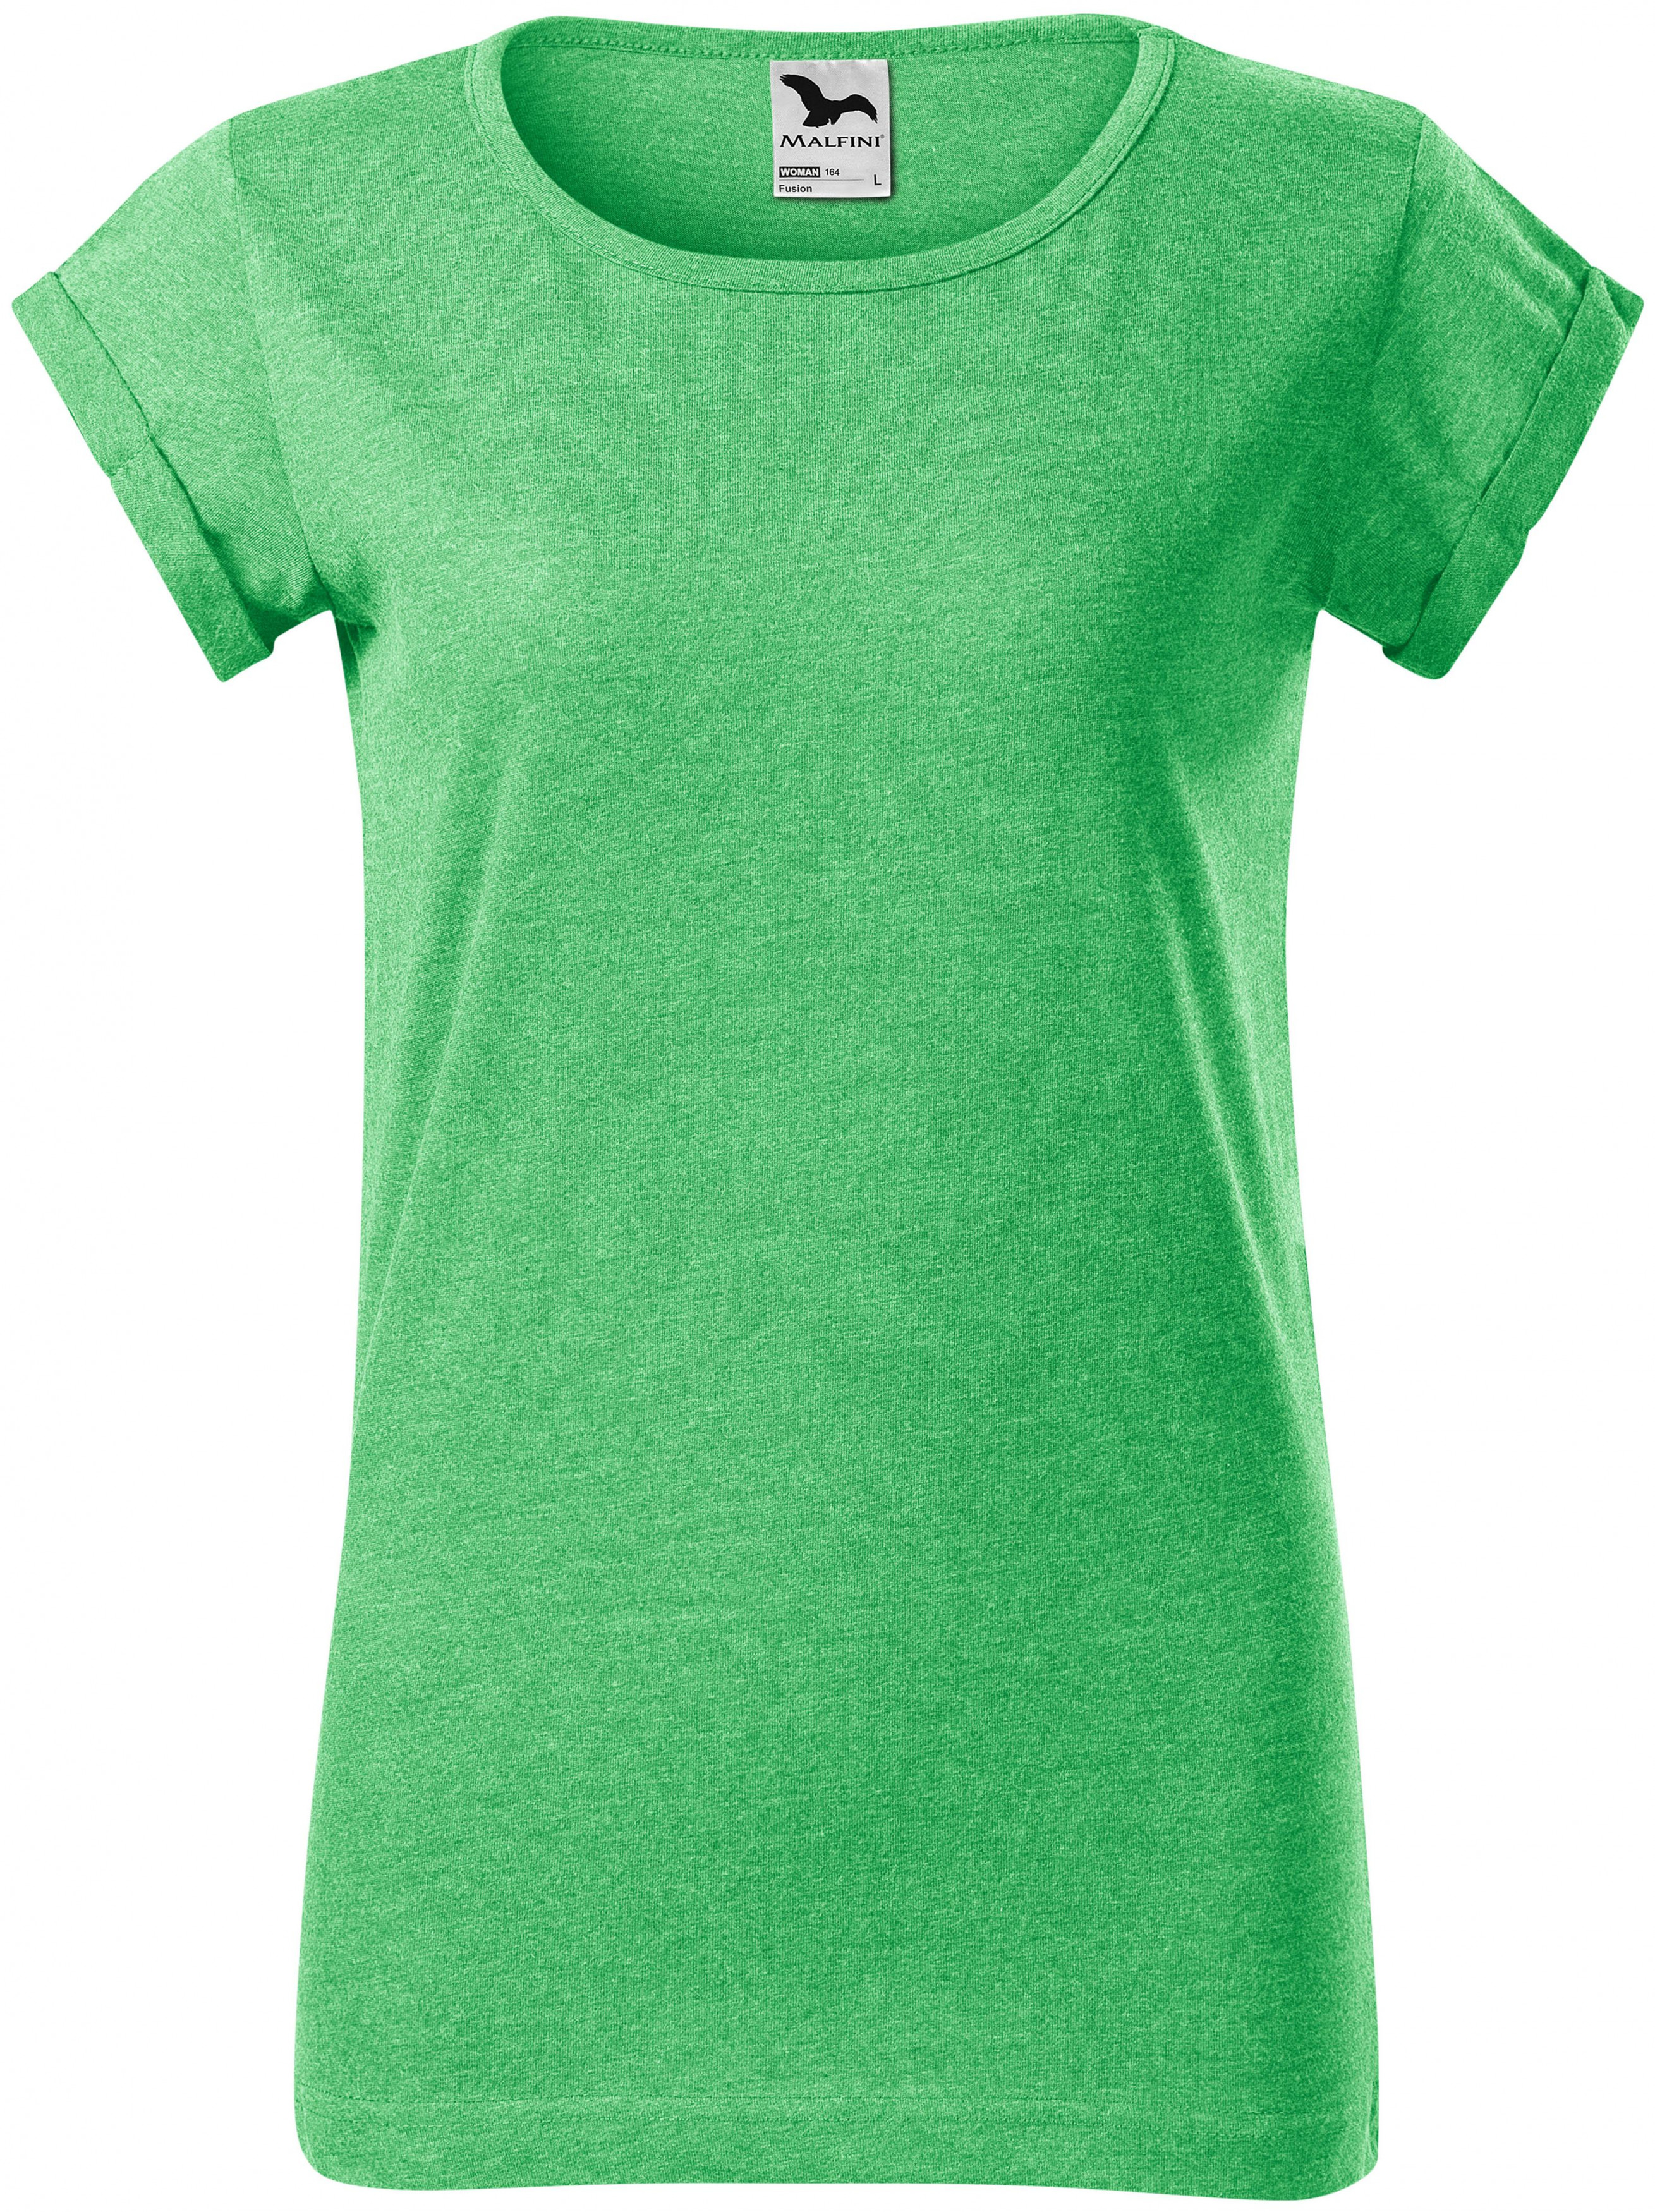 Dámske tričko s vyhrnutými rukávmi, zelený melír, M